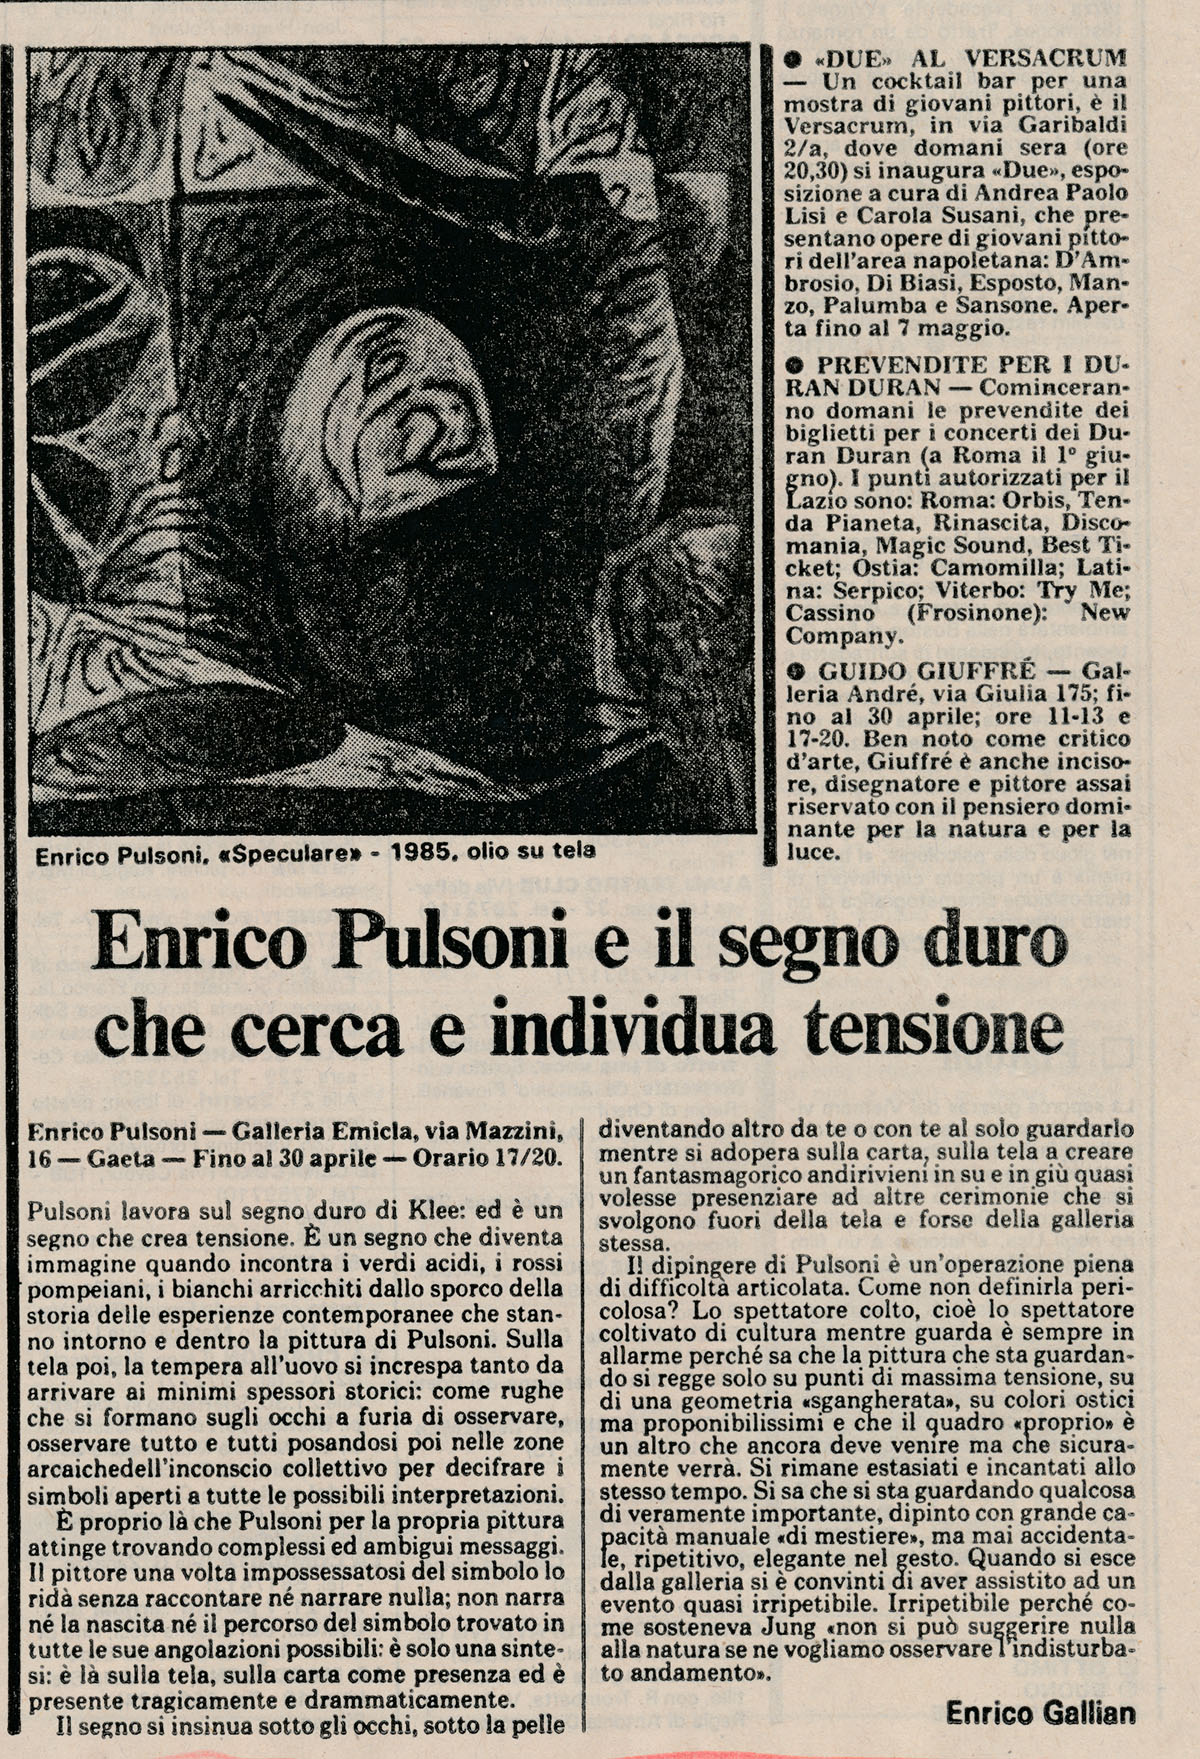 1987 Gaeta Galleria Emicla L'Unità gallian